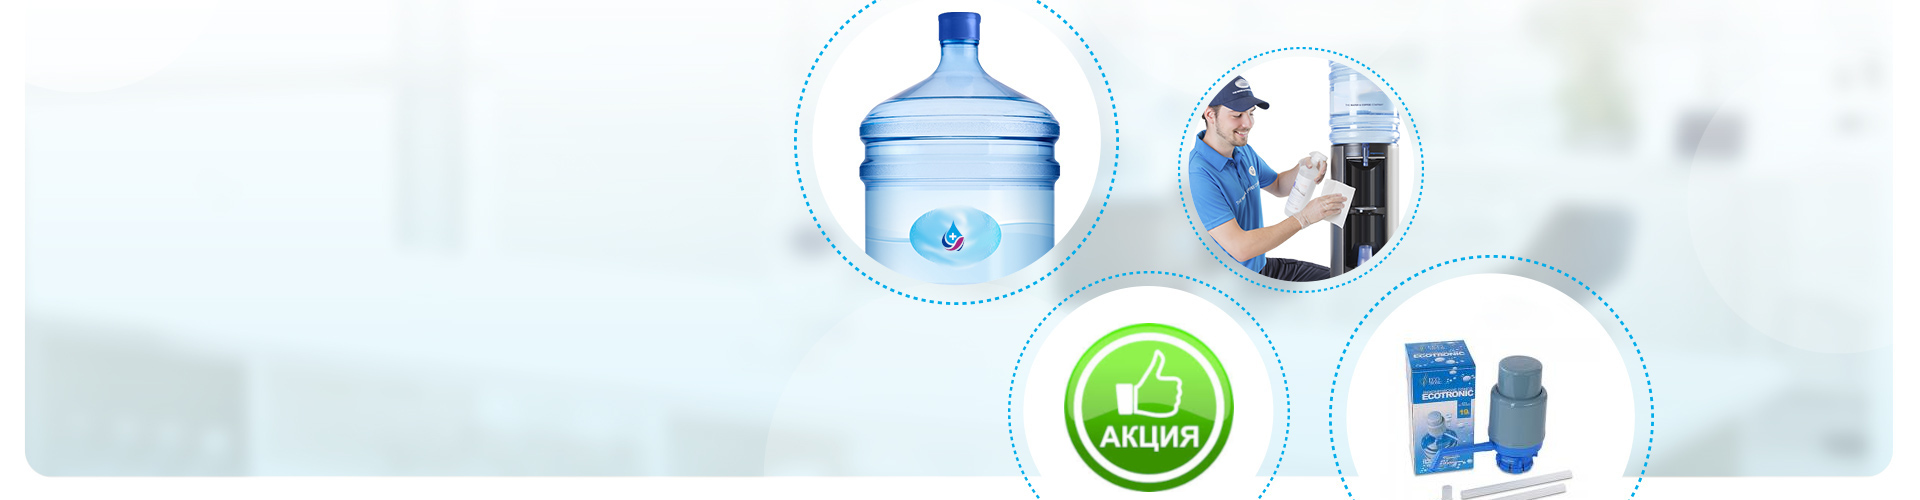 На фото четыре элемента: бутилированная вода от Aqua Plus, работник проводит обслуживание кулера, помпа и упаковка с помпой, зелёный значёк  Акция